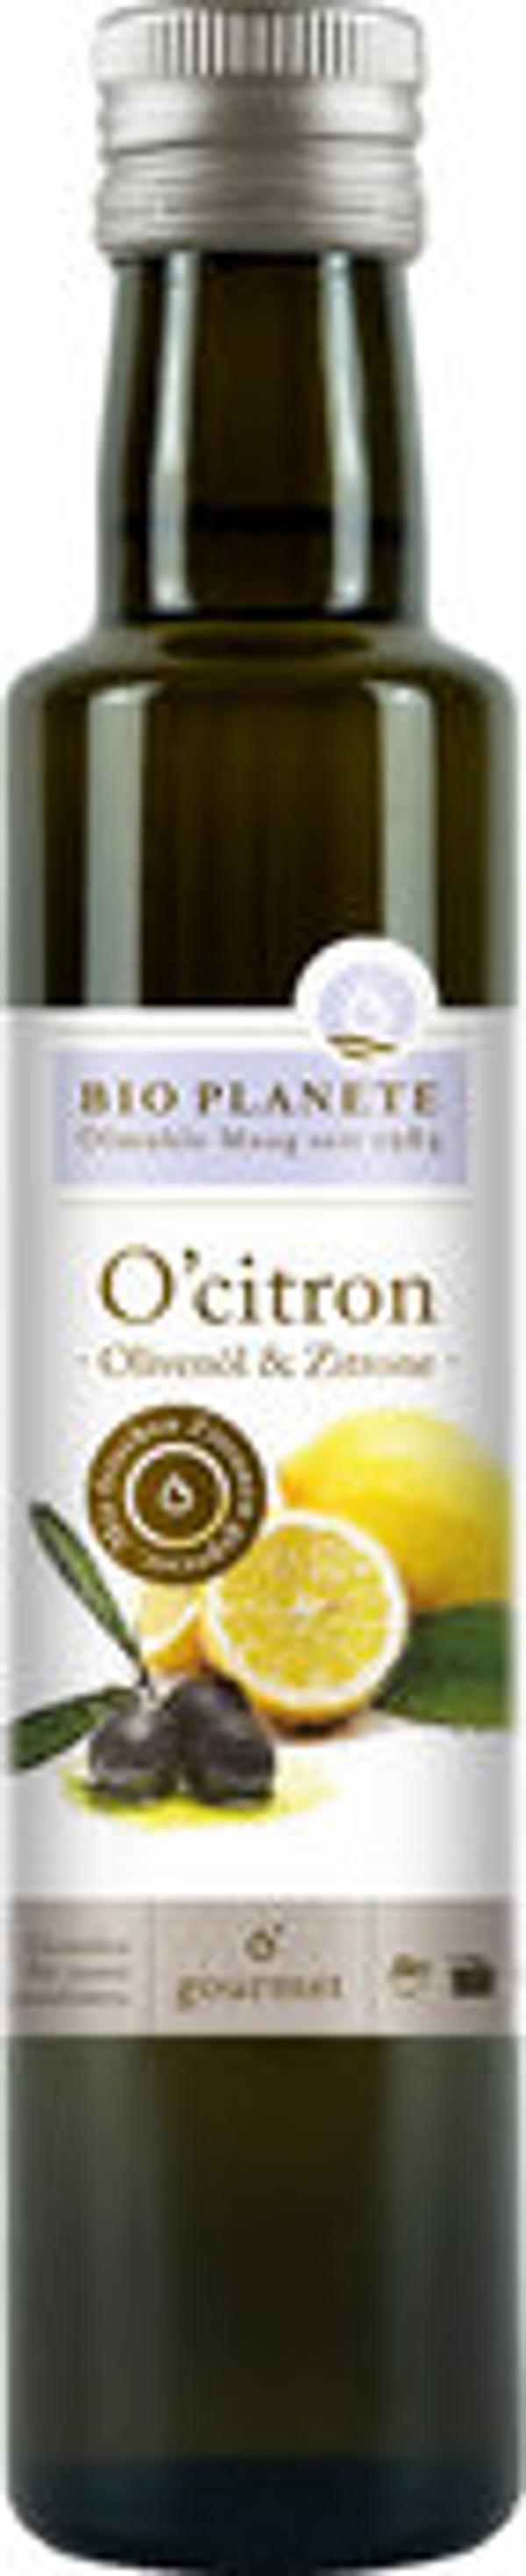 Produktfoto zu Olivenöl O'citron - mit Zitrone 250ml